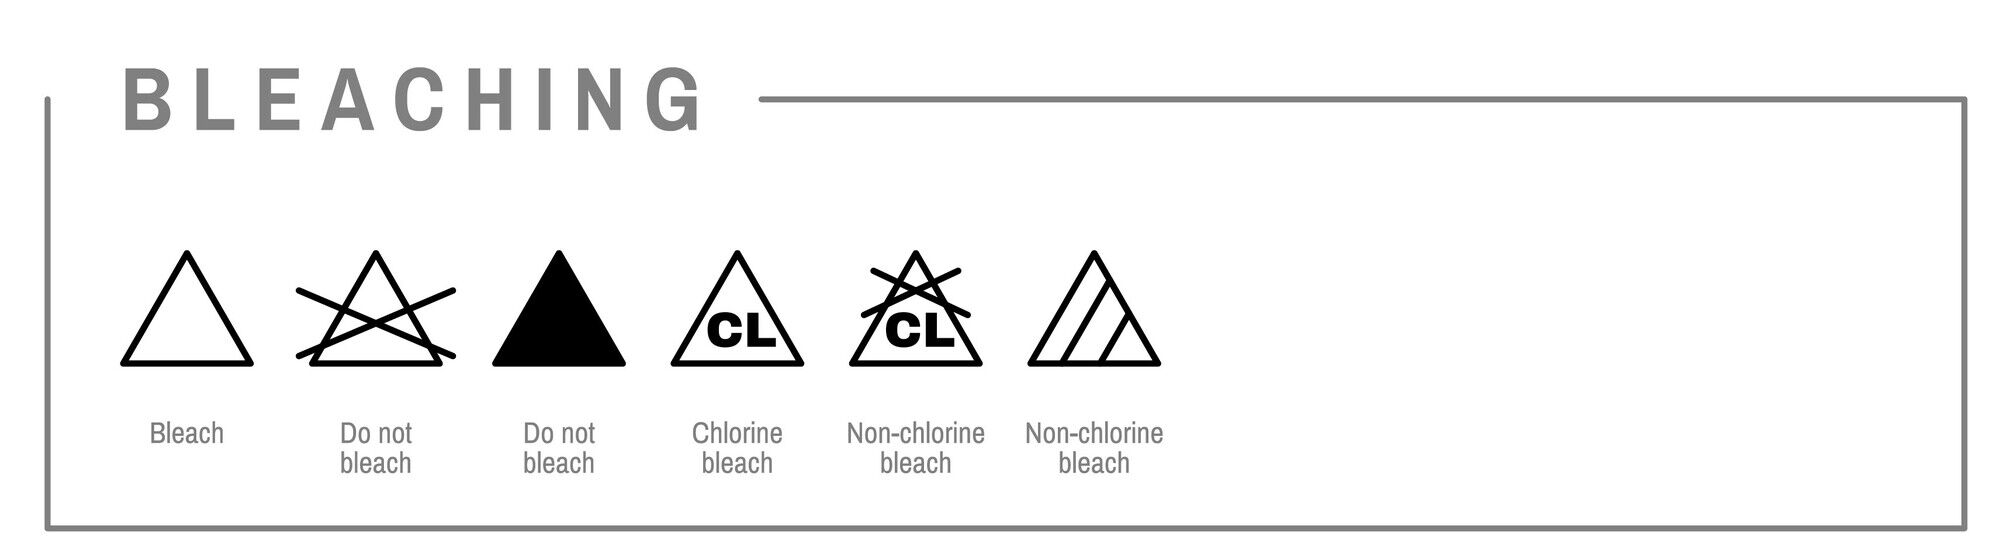 Що означає символ трикутника на етикетці одягу: це мають знати усі